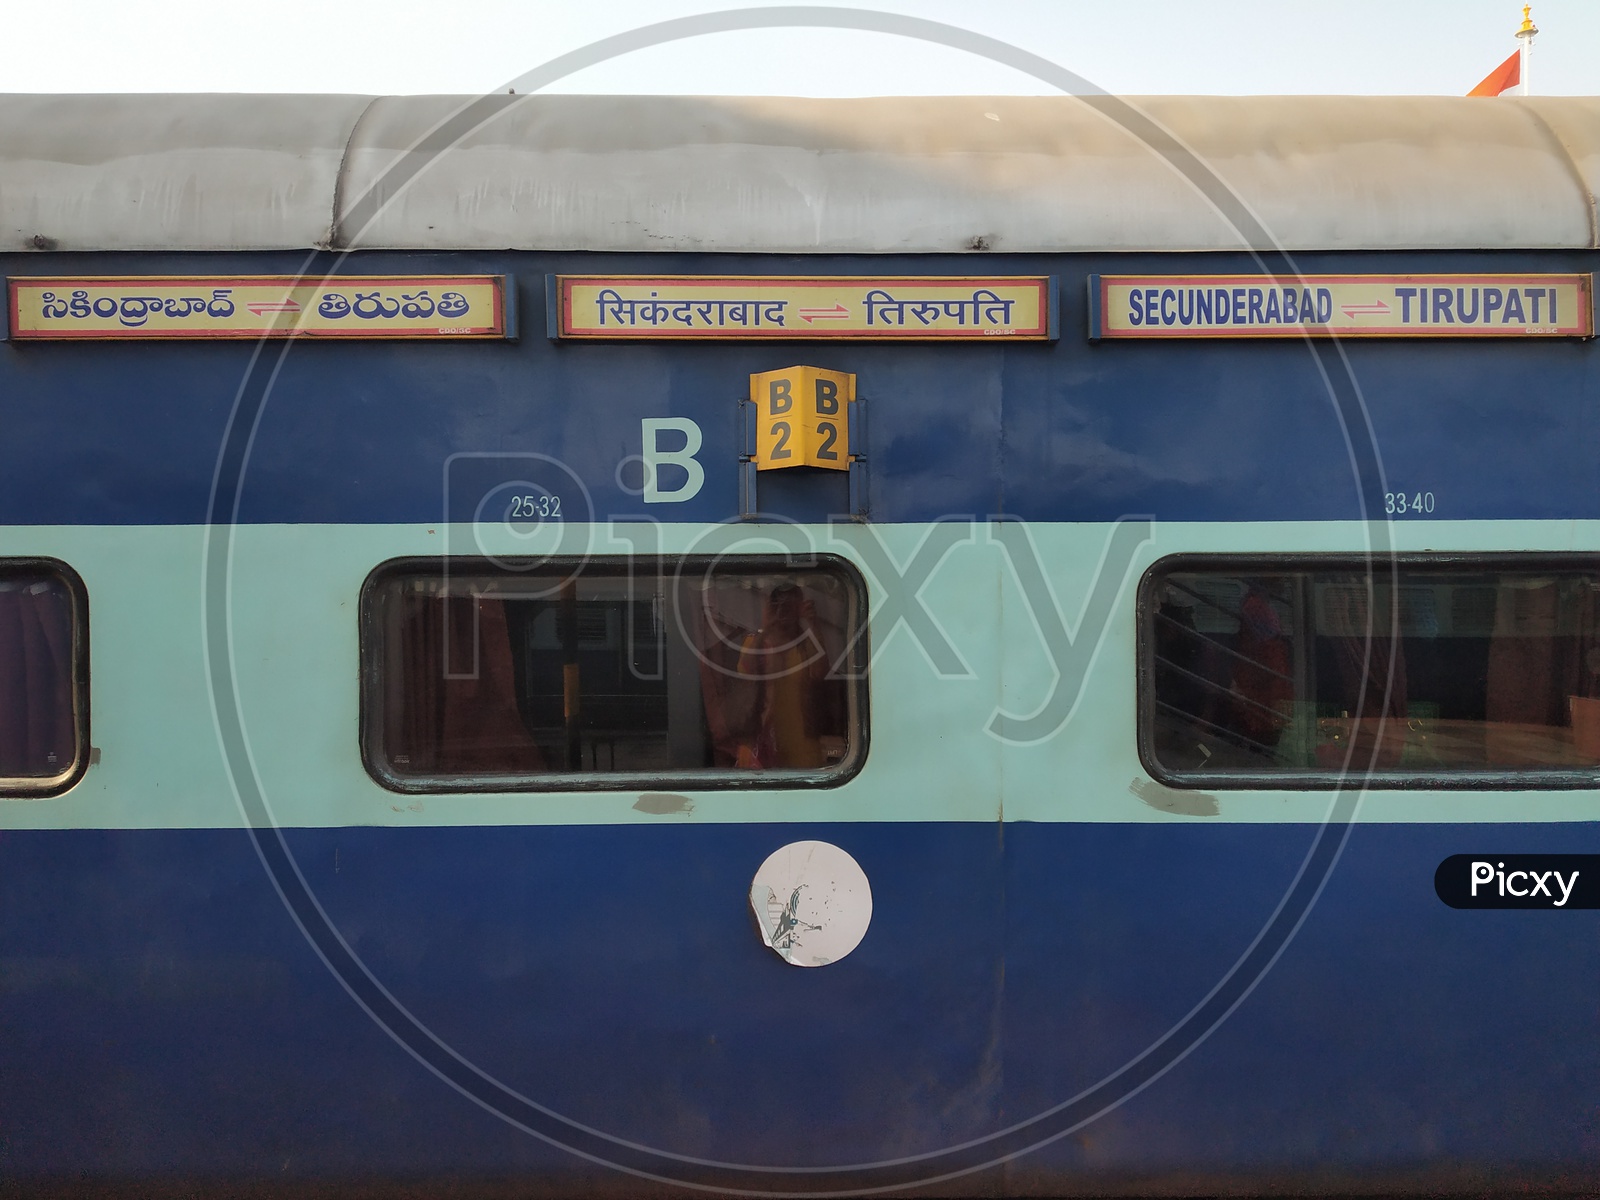 B2 Wagon Of a Indian Railways Train